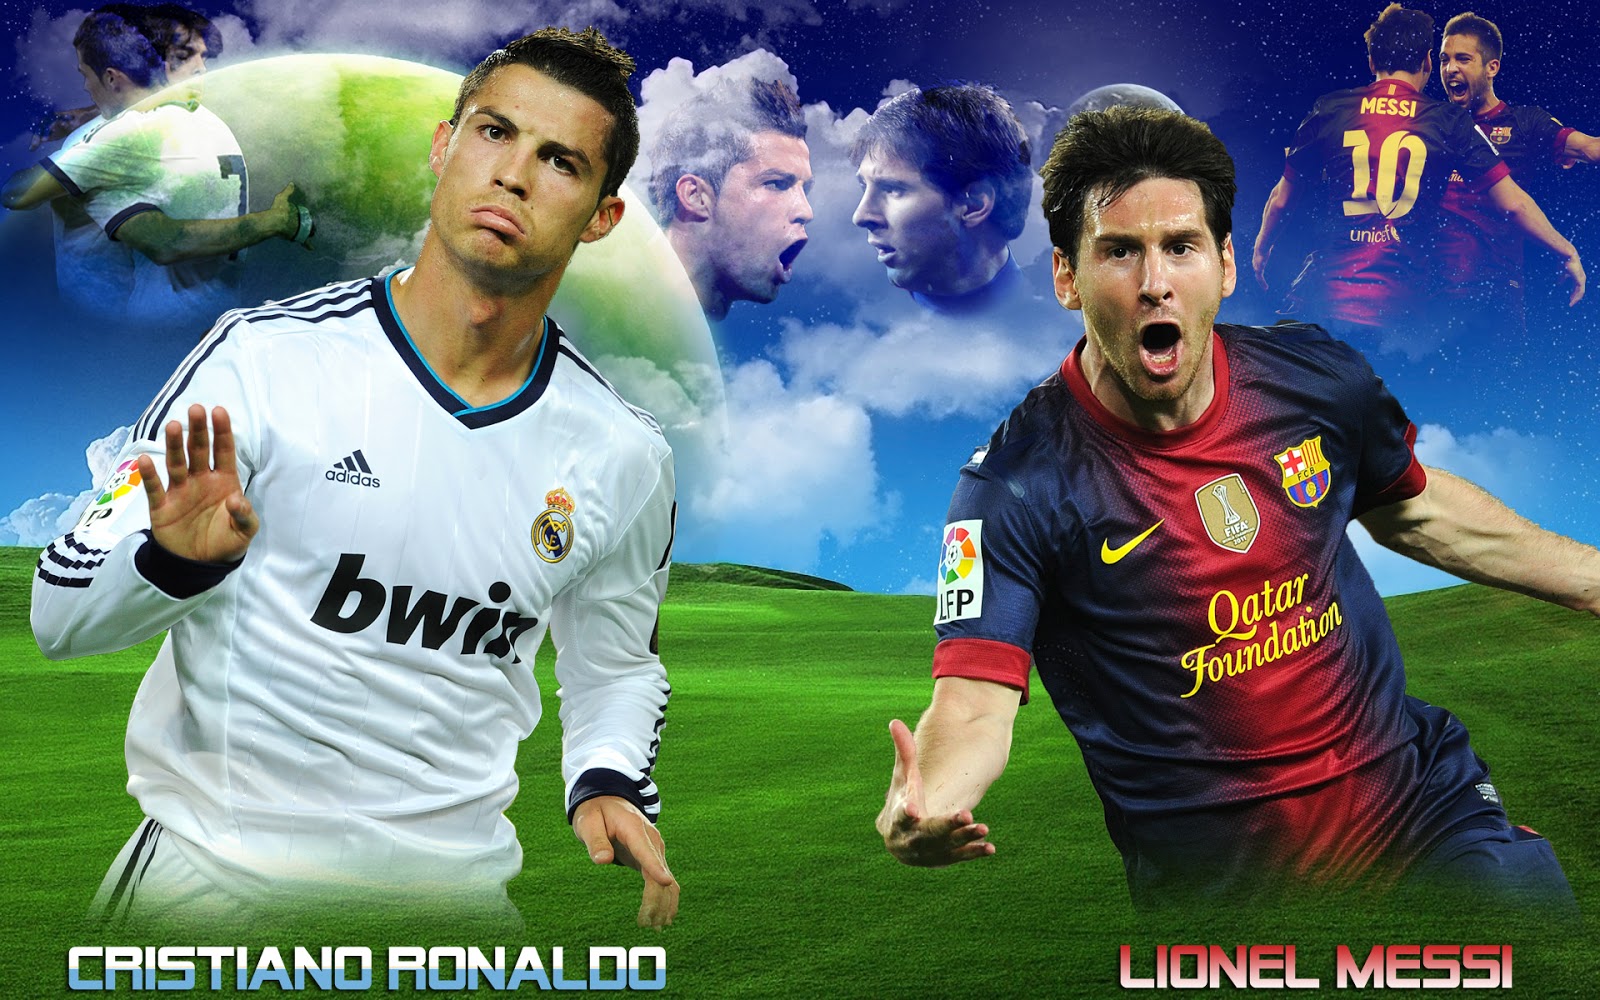 HD Cristiano Ronaldo Vs Lionel Messi Wallpaper Hq